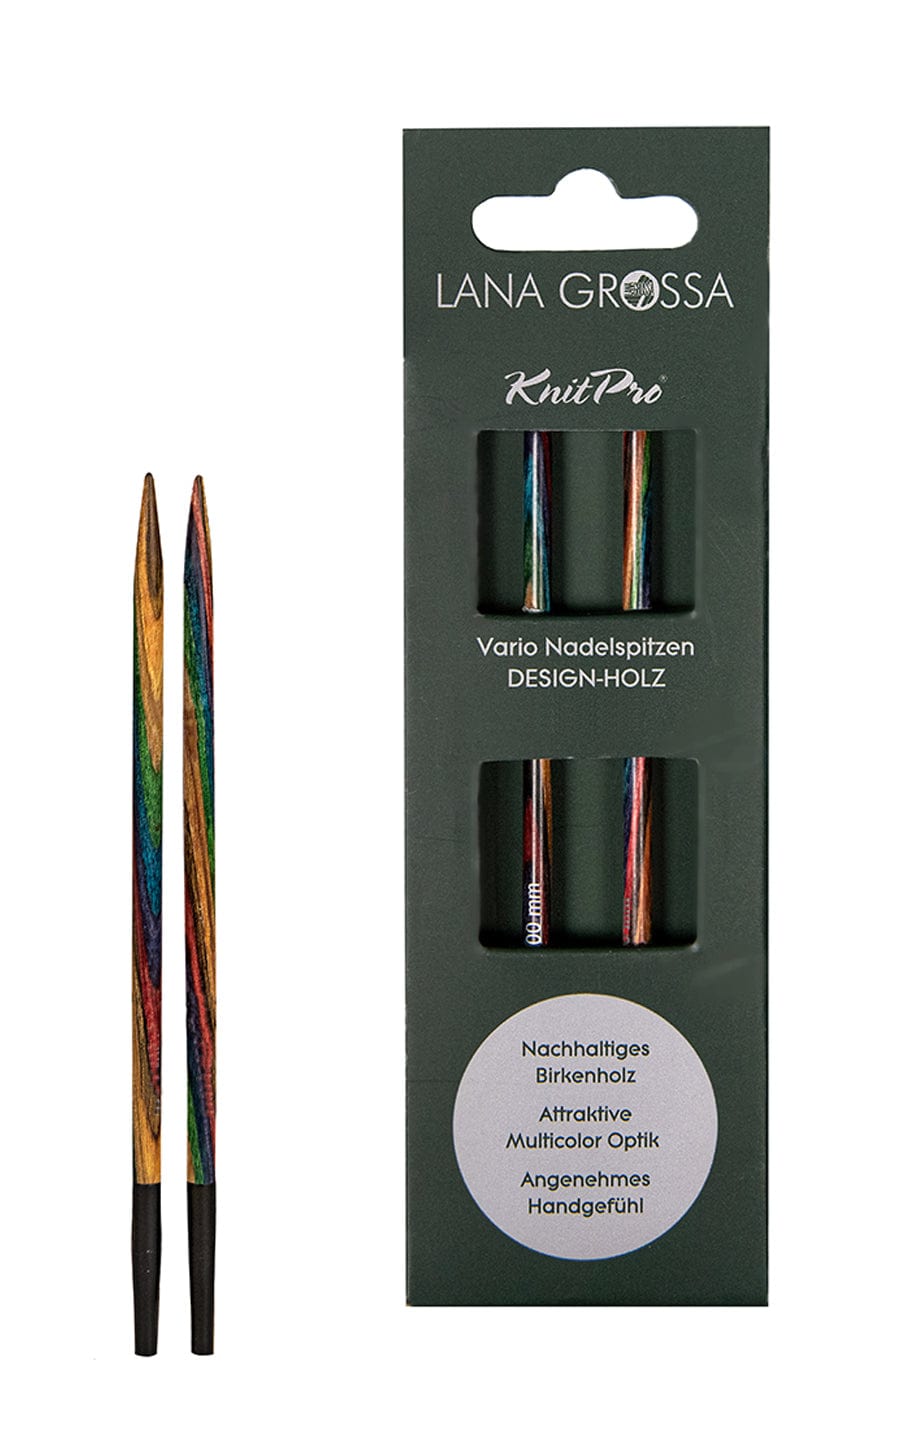 LANA GROSSA Nadeln Kurze 4,0 mm Nadelspitze Vario aus Holz - neue Verpackung